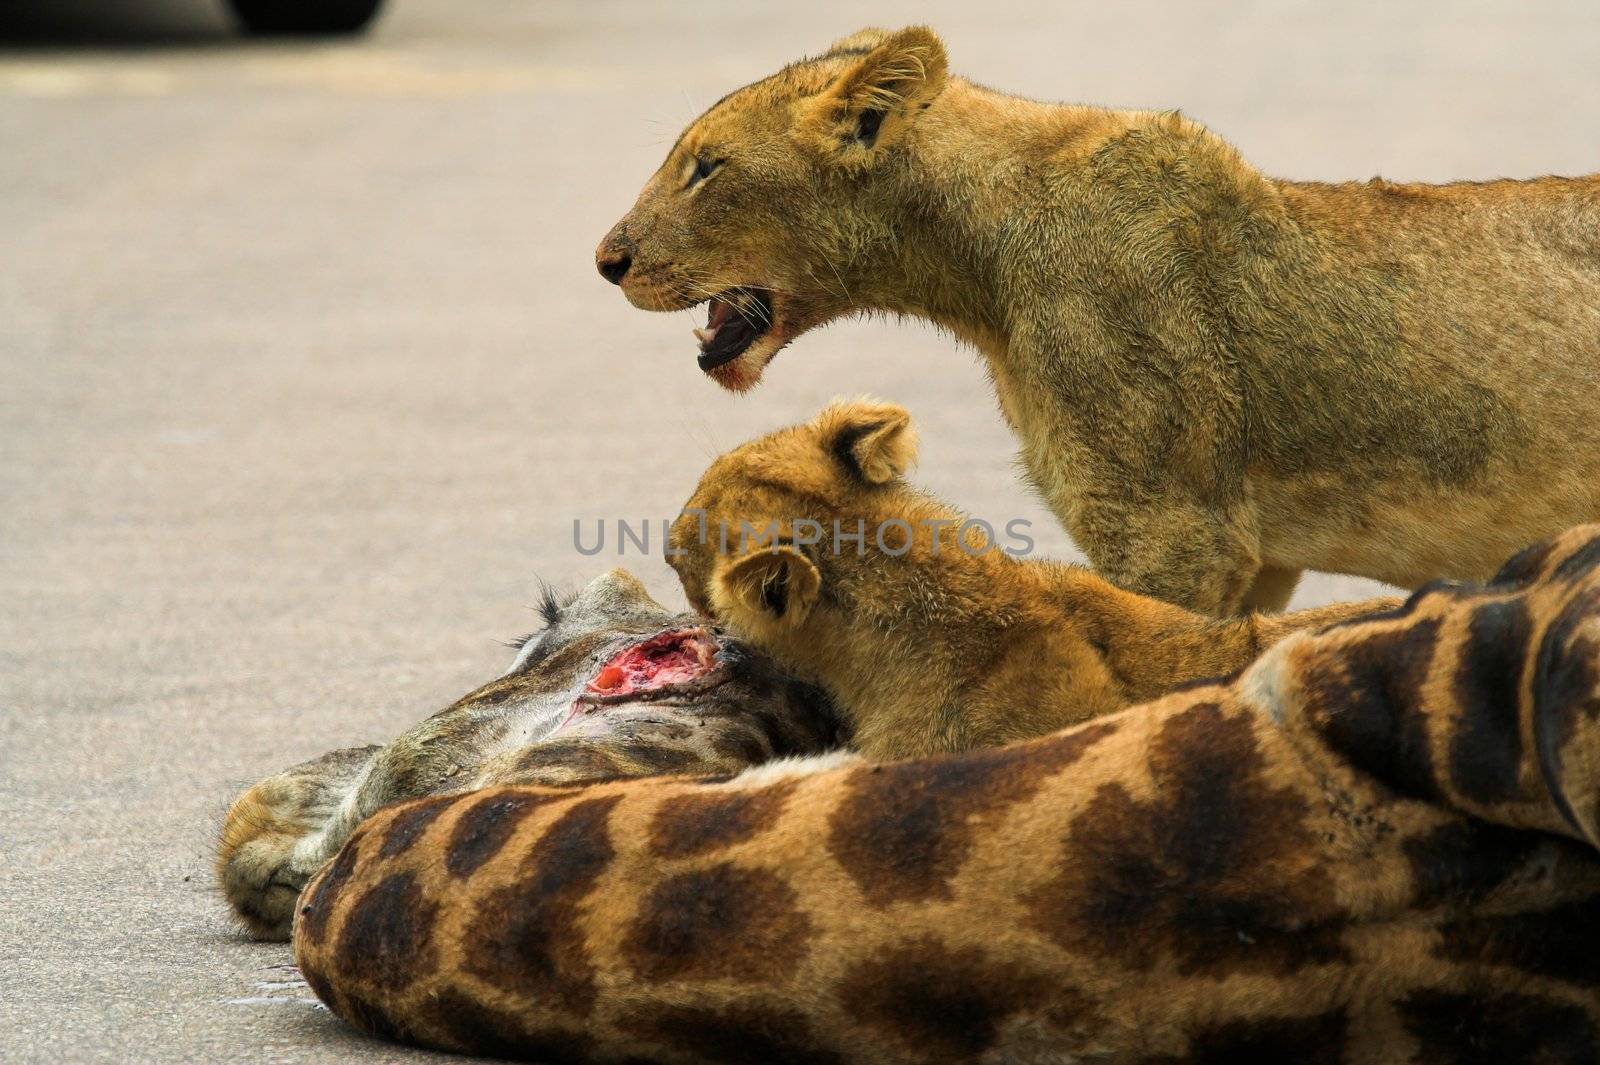 Lion Cubs Feeding on a giraffe by nightowlza